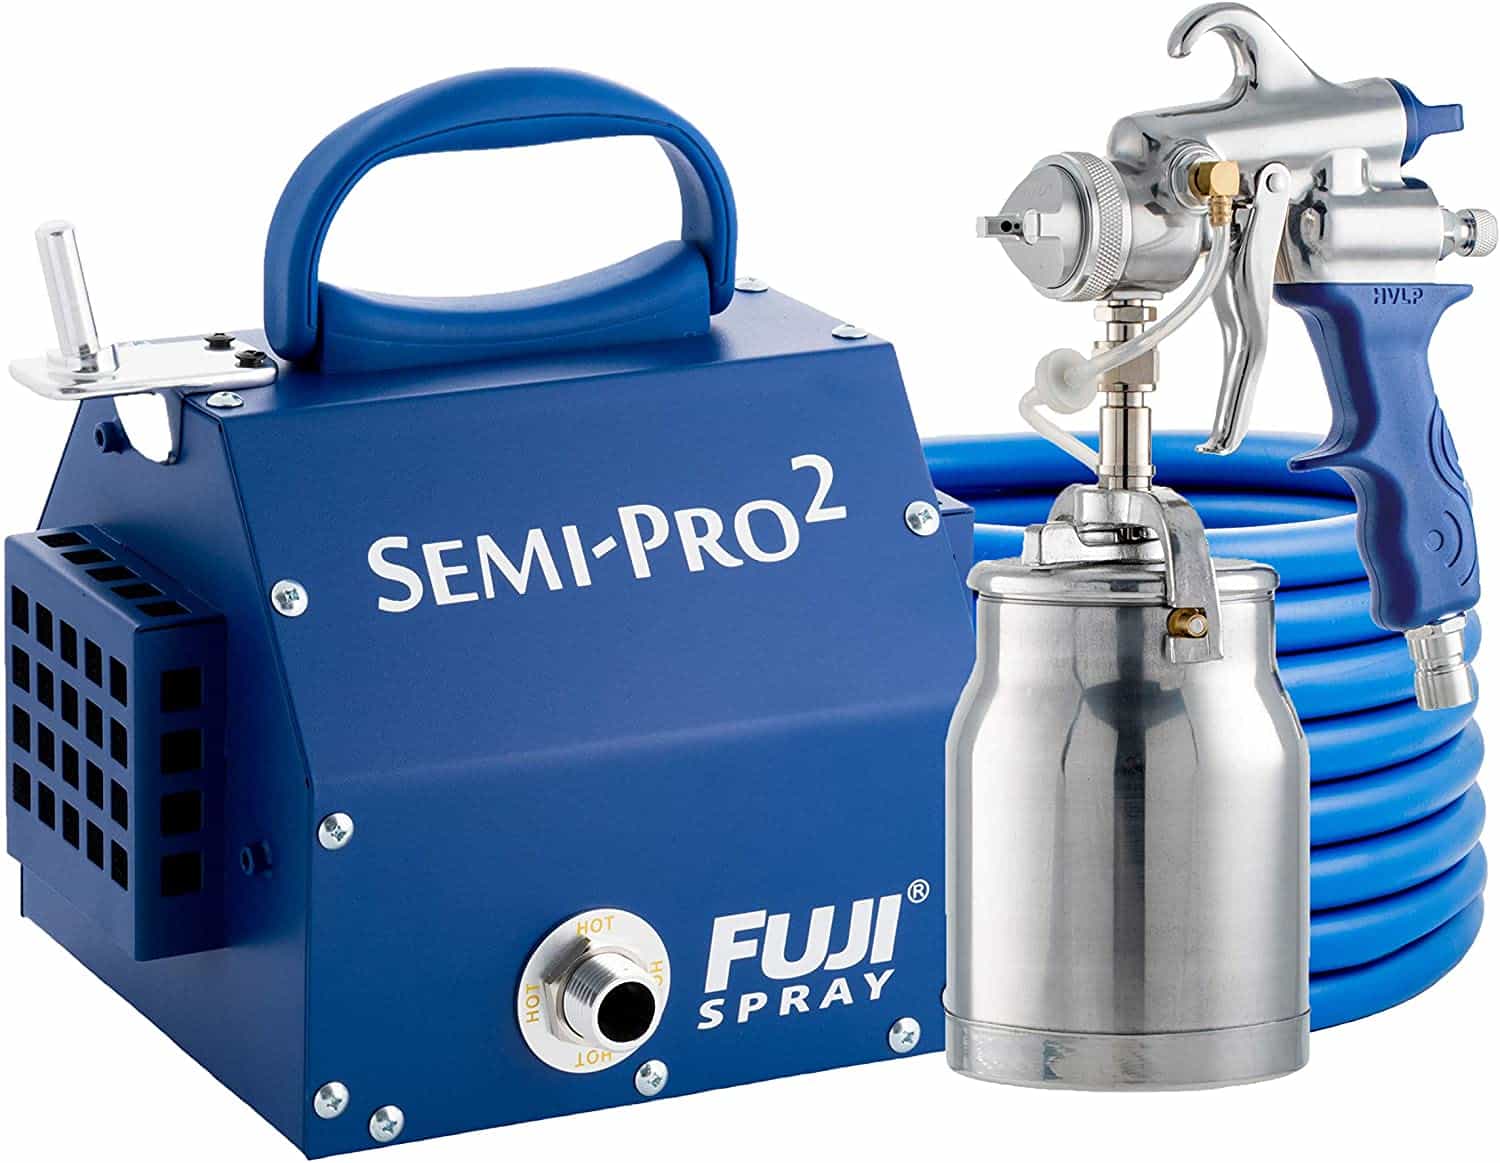 Fuji 2203g Semi Pro-2 Automotive HVLP Spray System